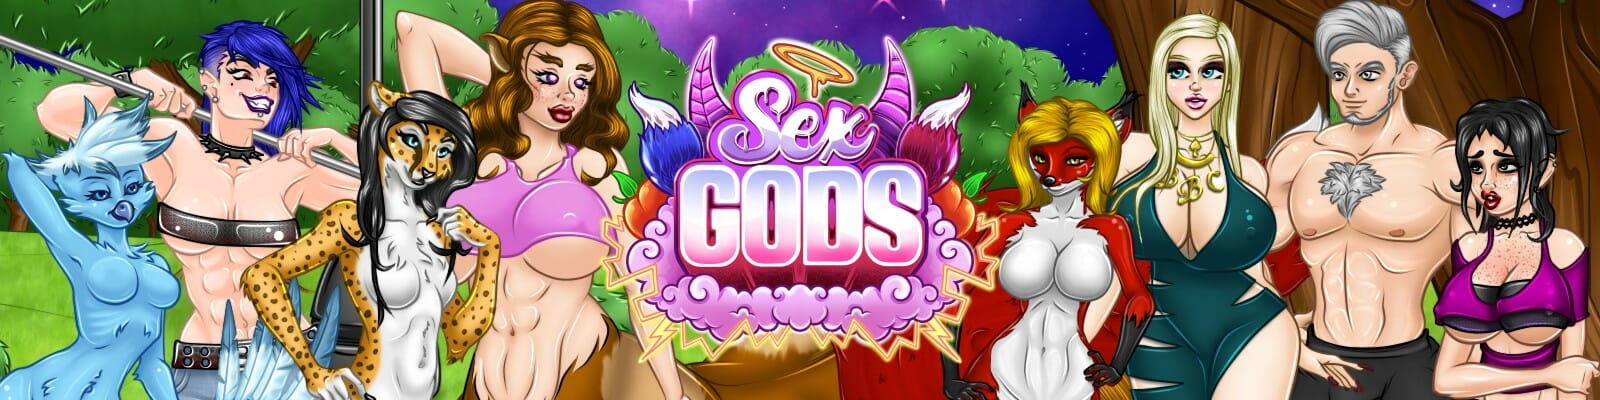 Sex Gods Adult Game Download (1)